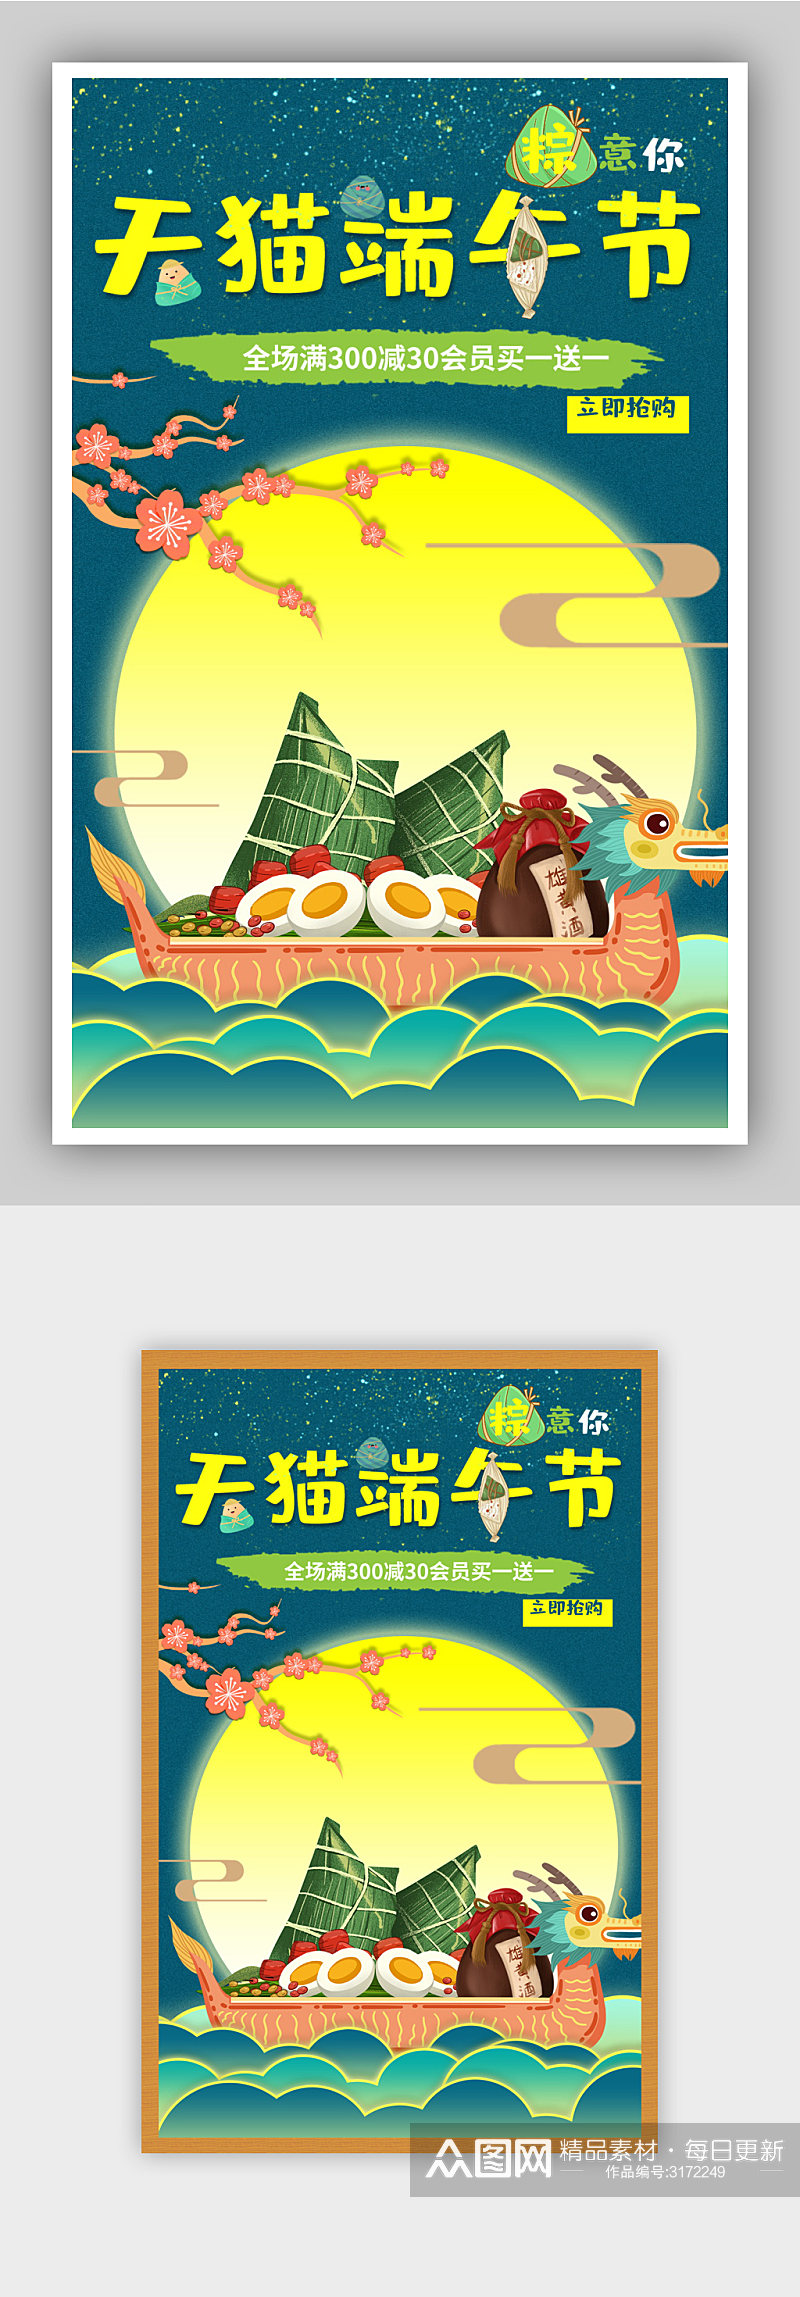 龙舟粽子手绘天猫端午节促销海报素材